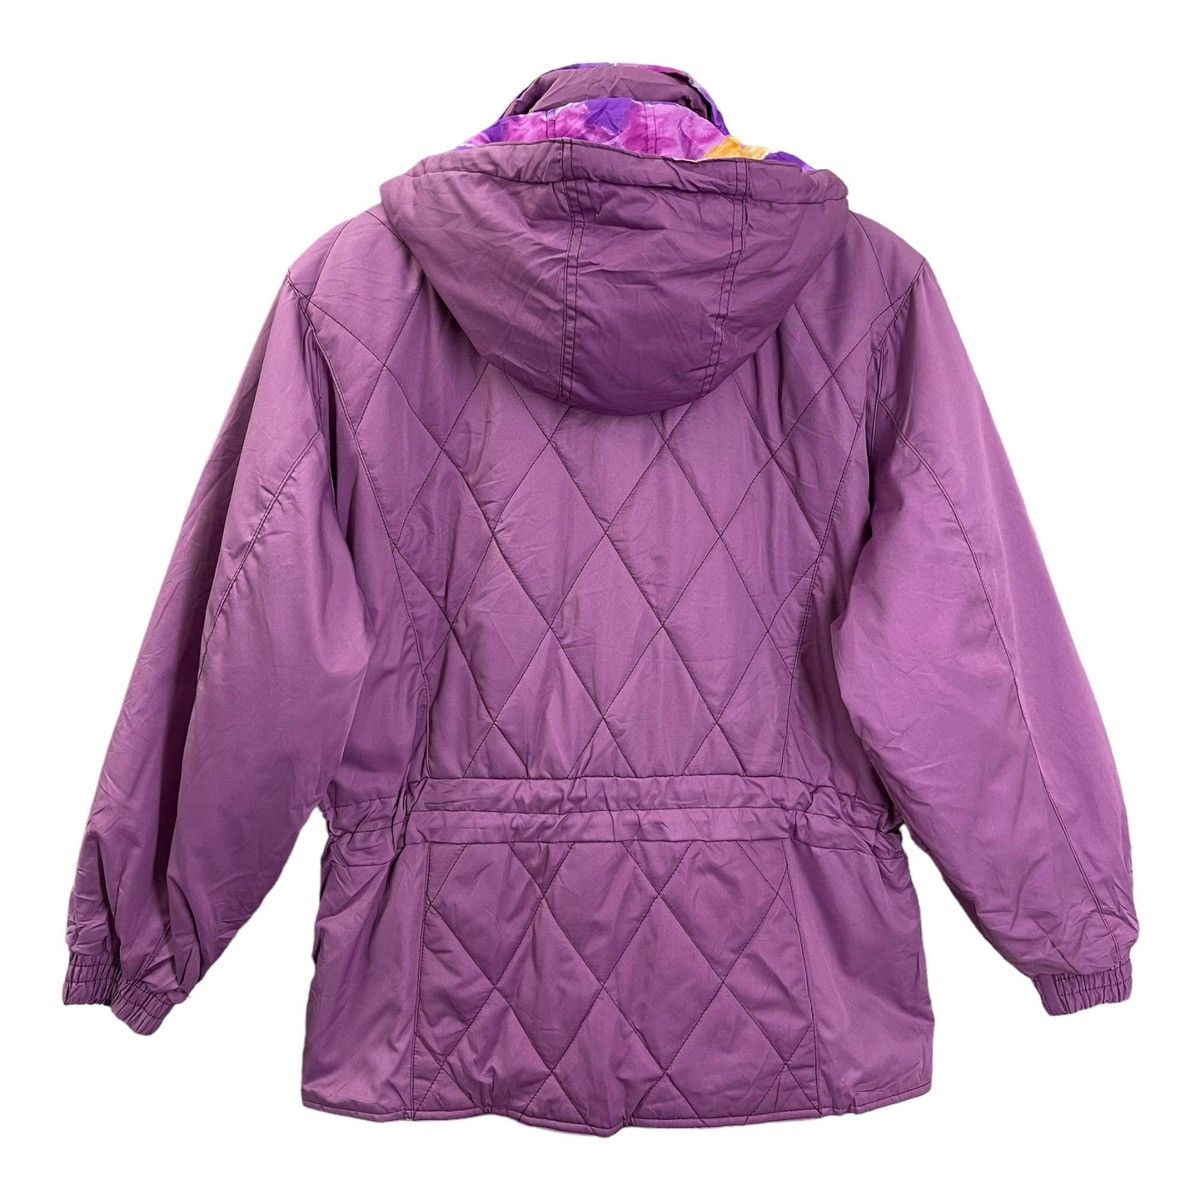 Vintage - LADIES💥 Plus Joy Ful Hoodies Ski Jacket Size M - 6